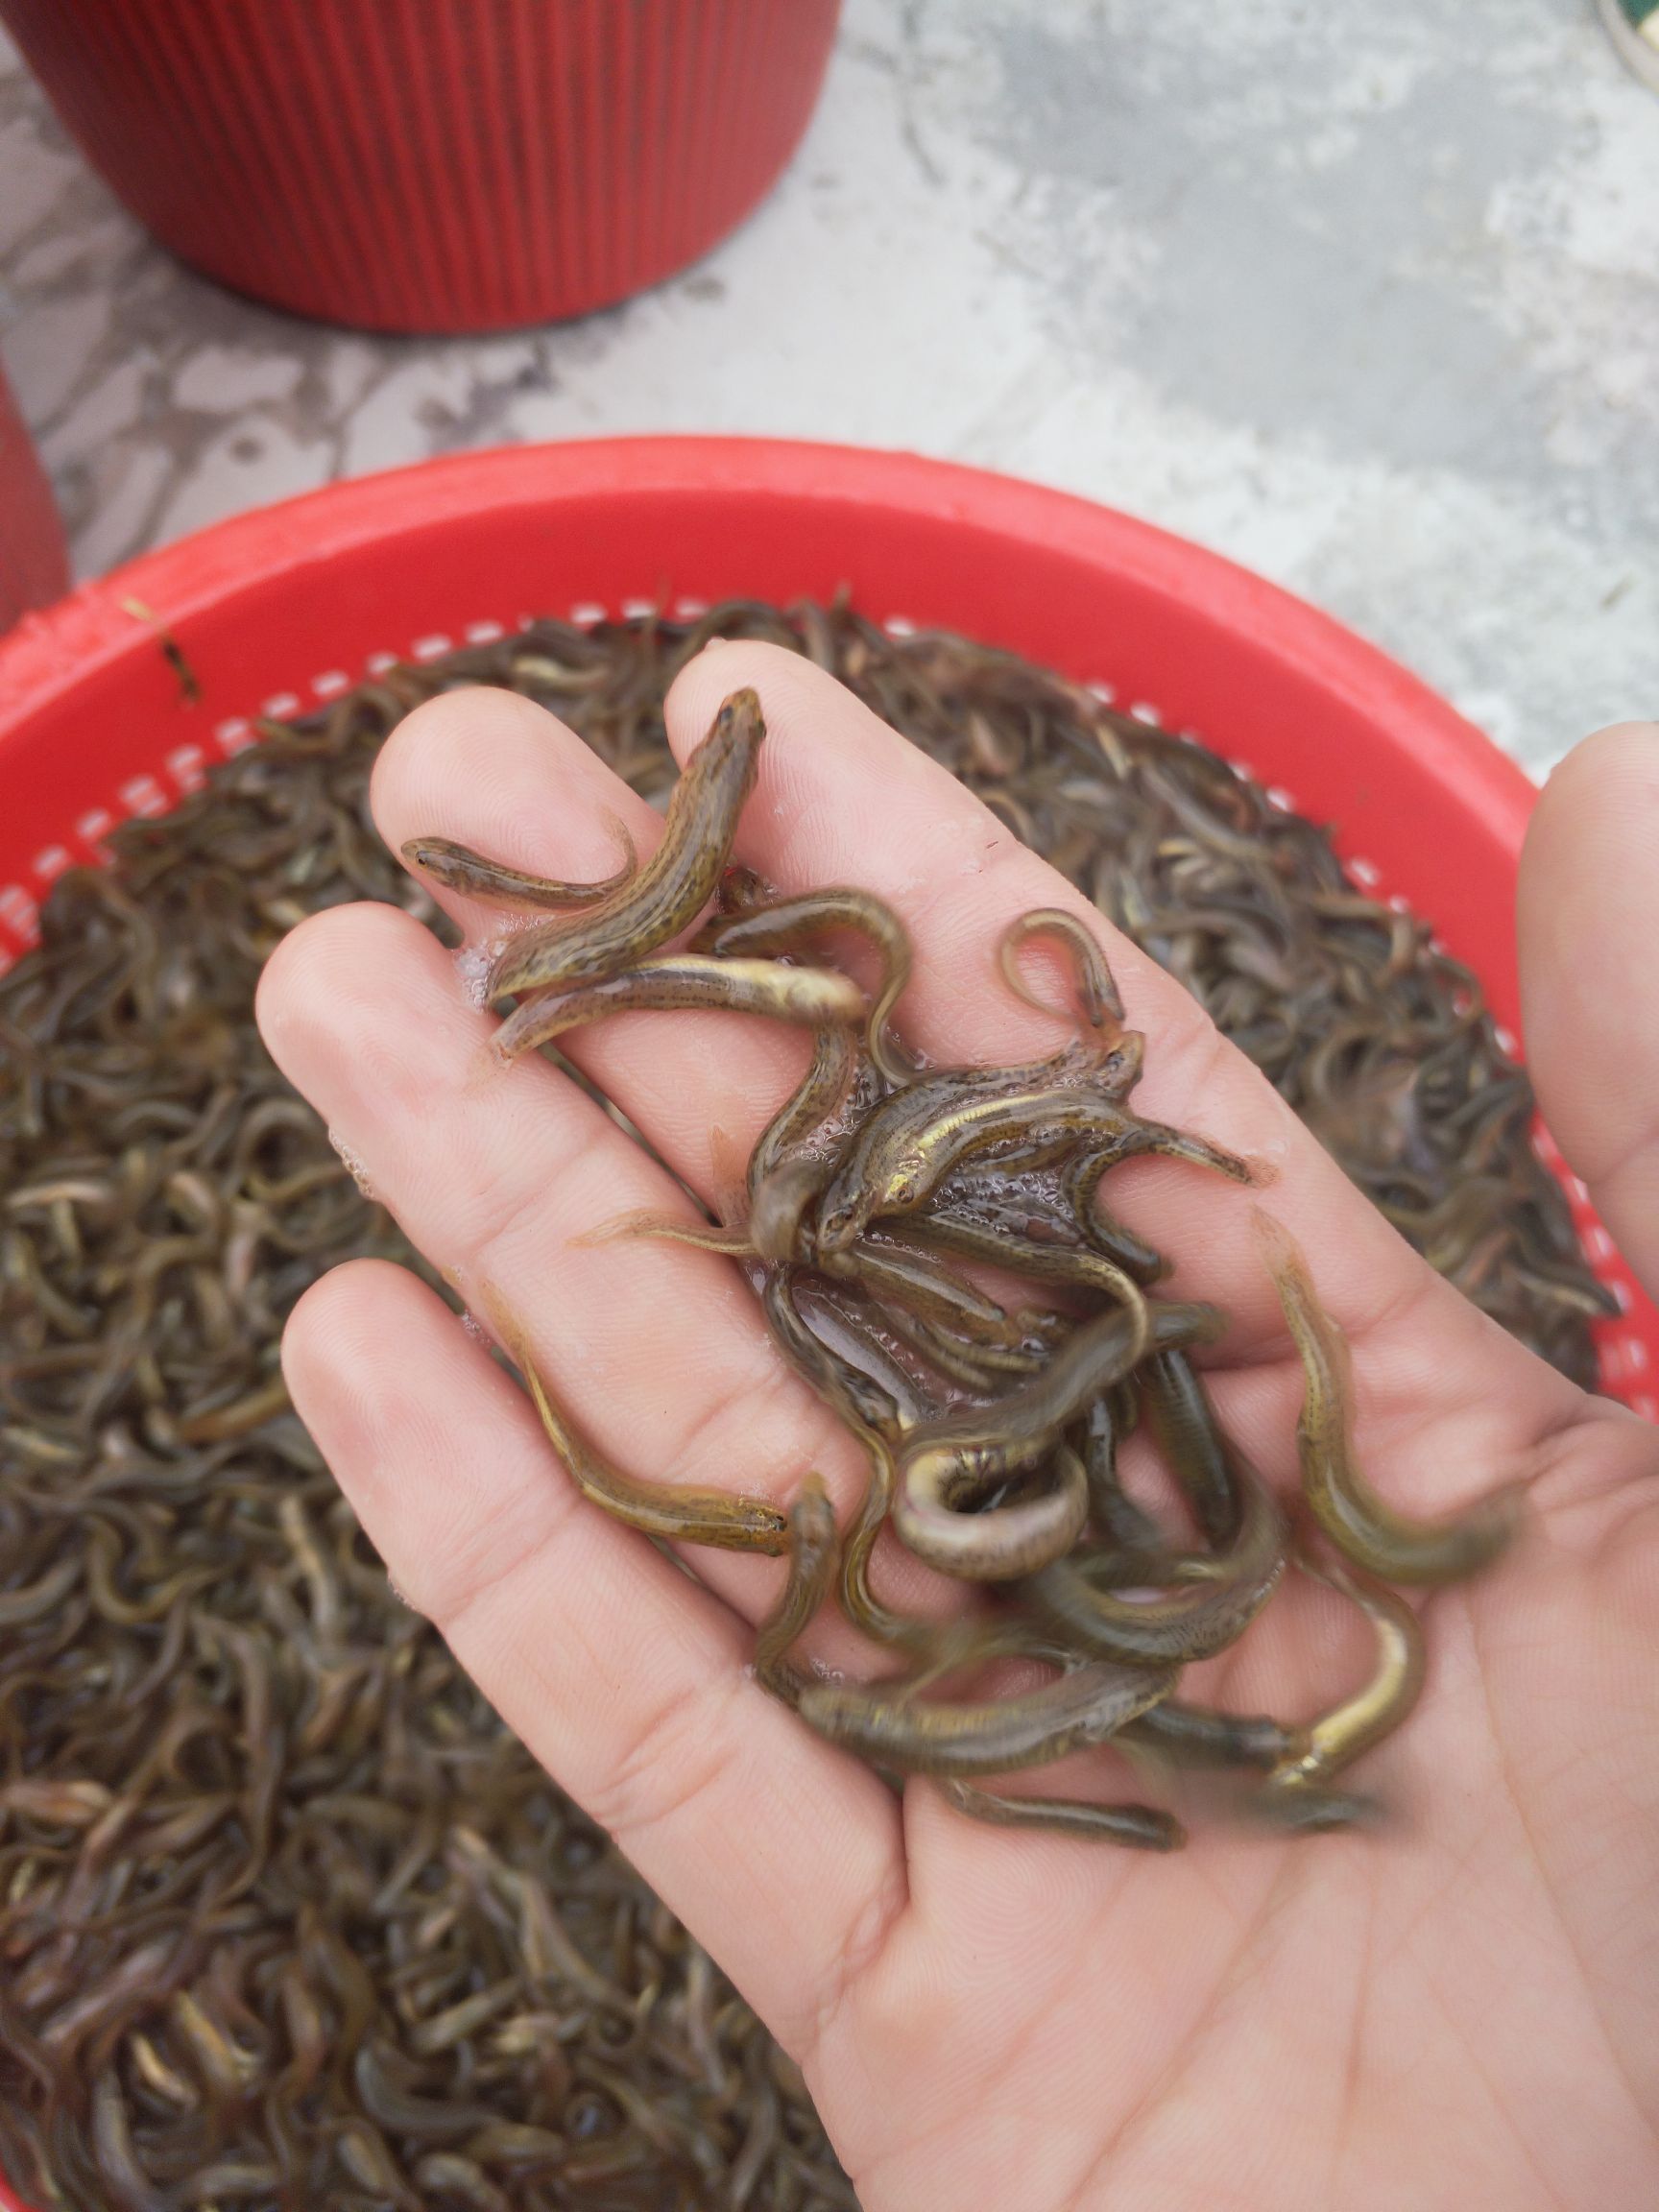 广州泥鳅苗 创达丰水产诚信经营各类优质淡水鱼苗